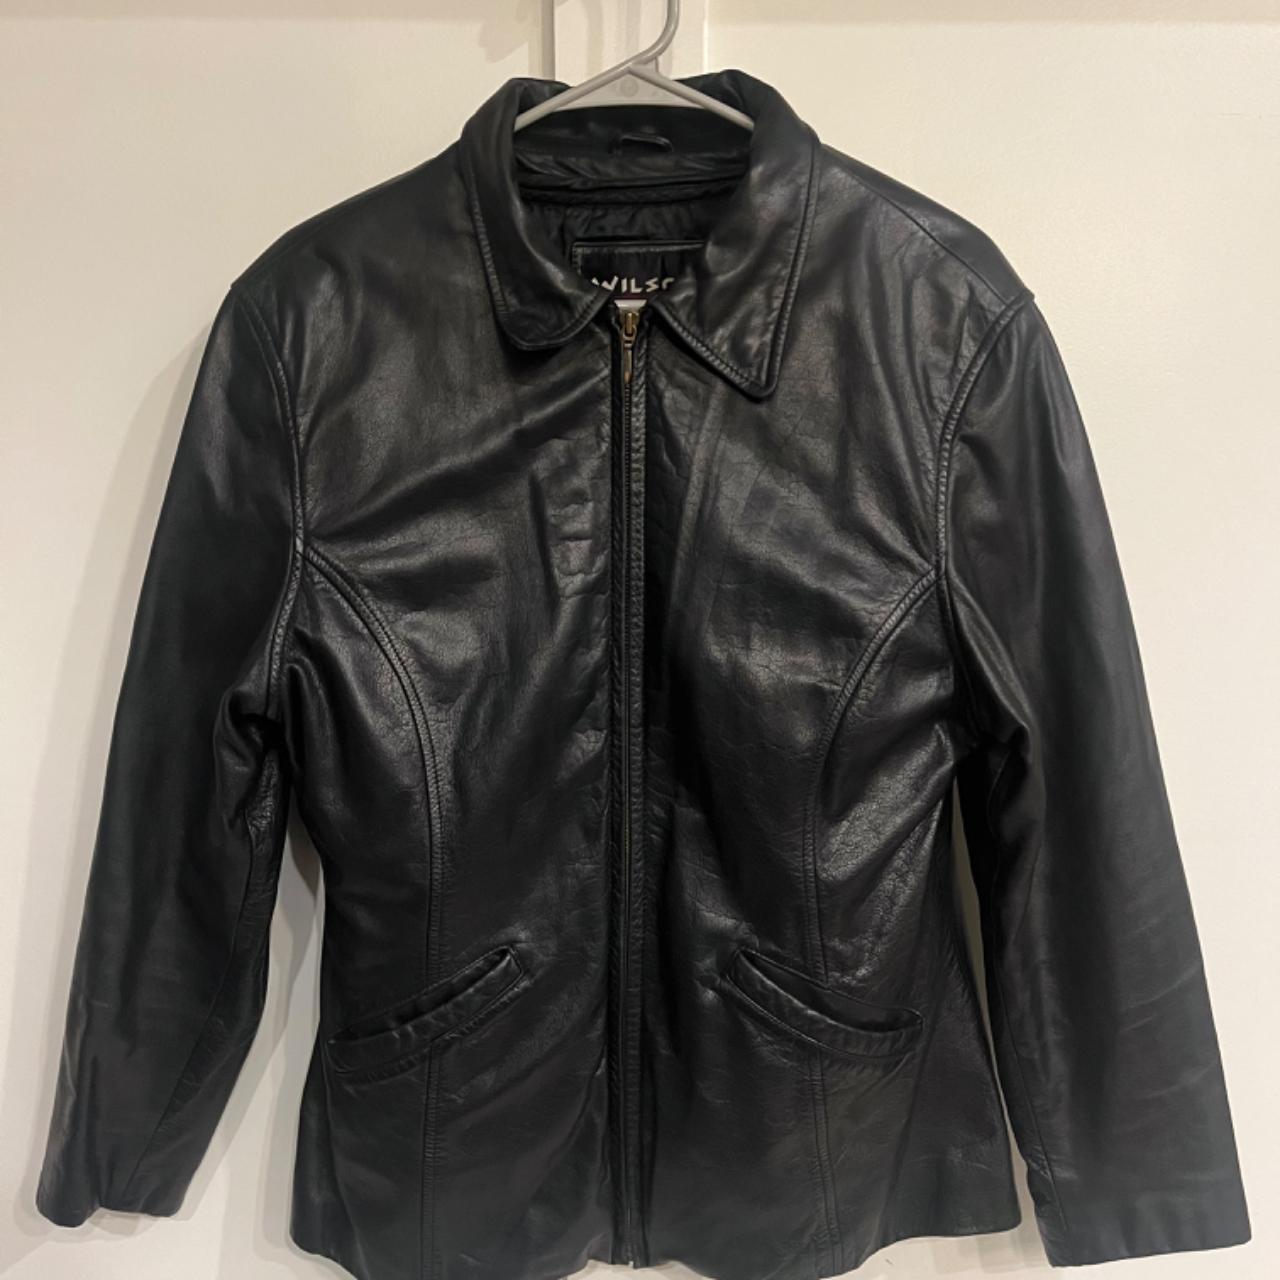 Vintage Wilsons leather jacket. Size large (L).... - Depop